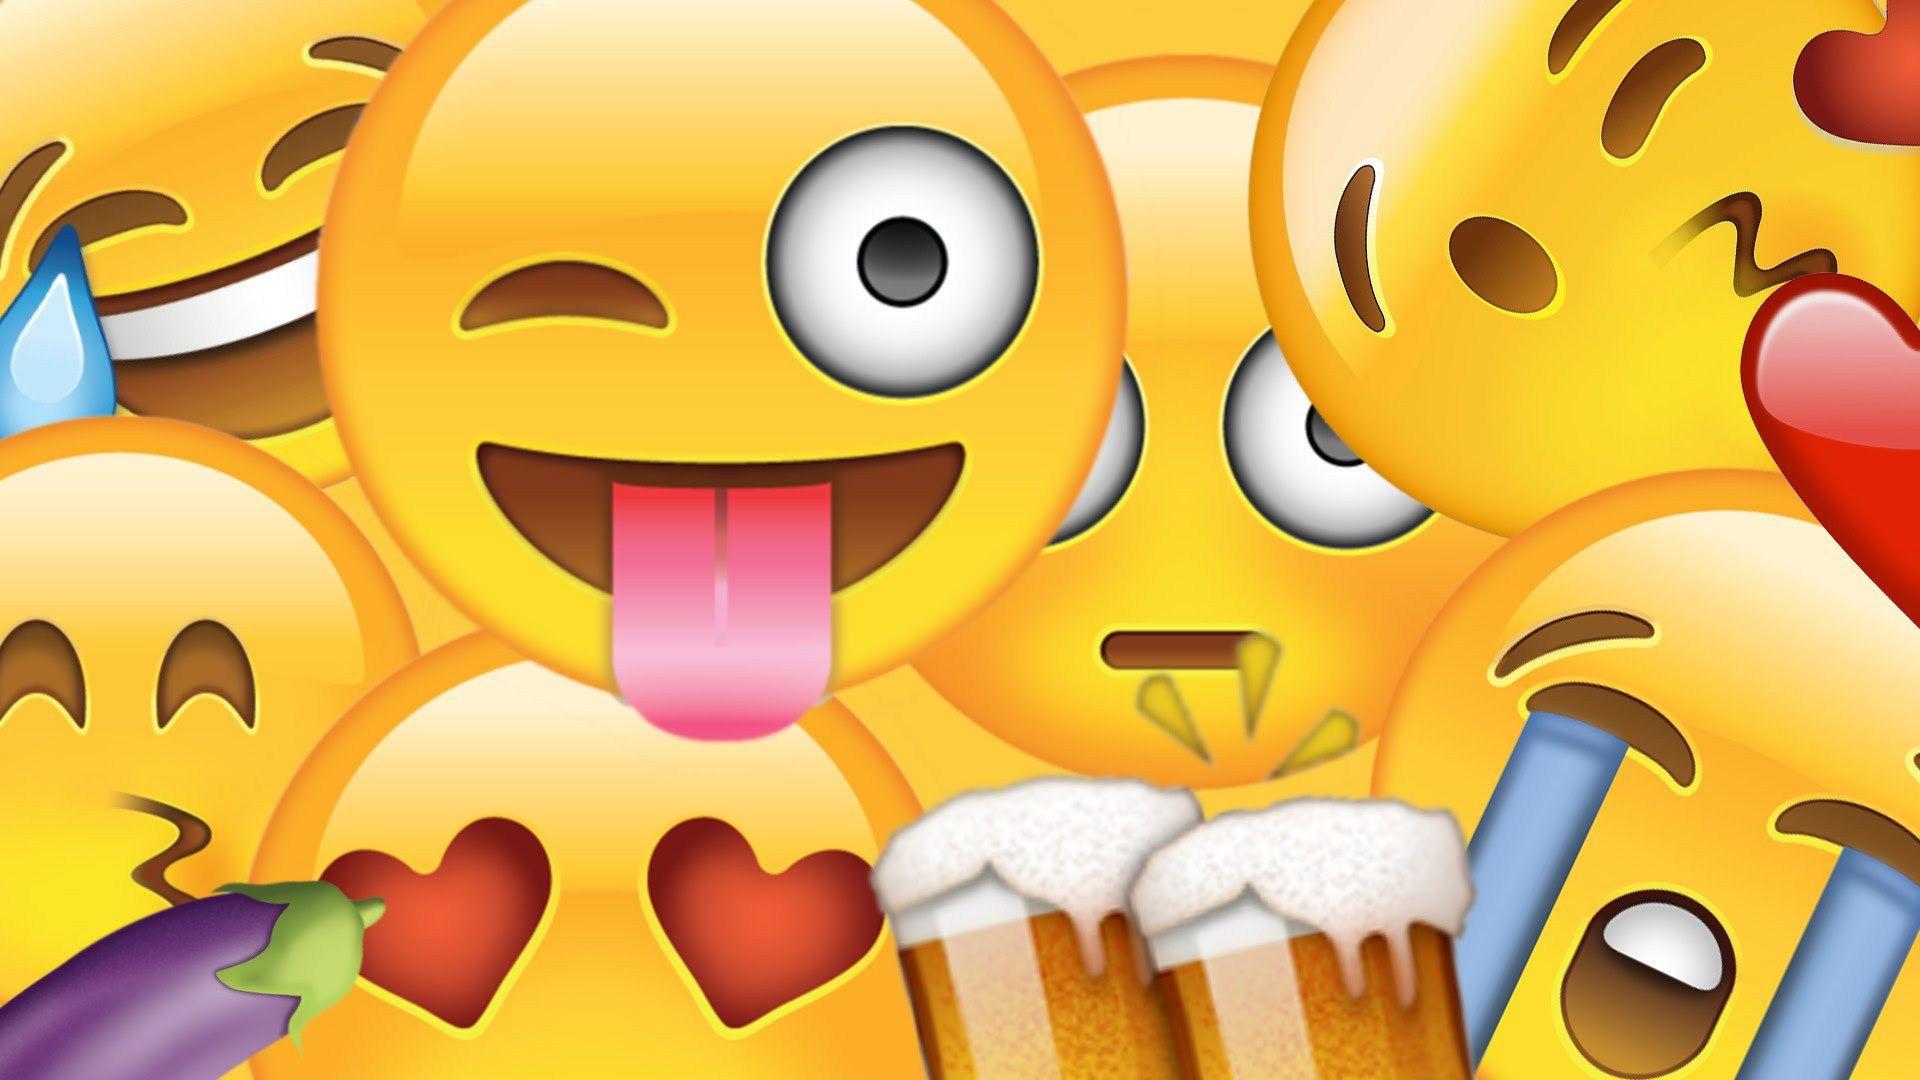 Emoji Wallpaper. Emoji Wallpaper, Cute Emoji Wallpaper and Pretty Emoji Wallpaper